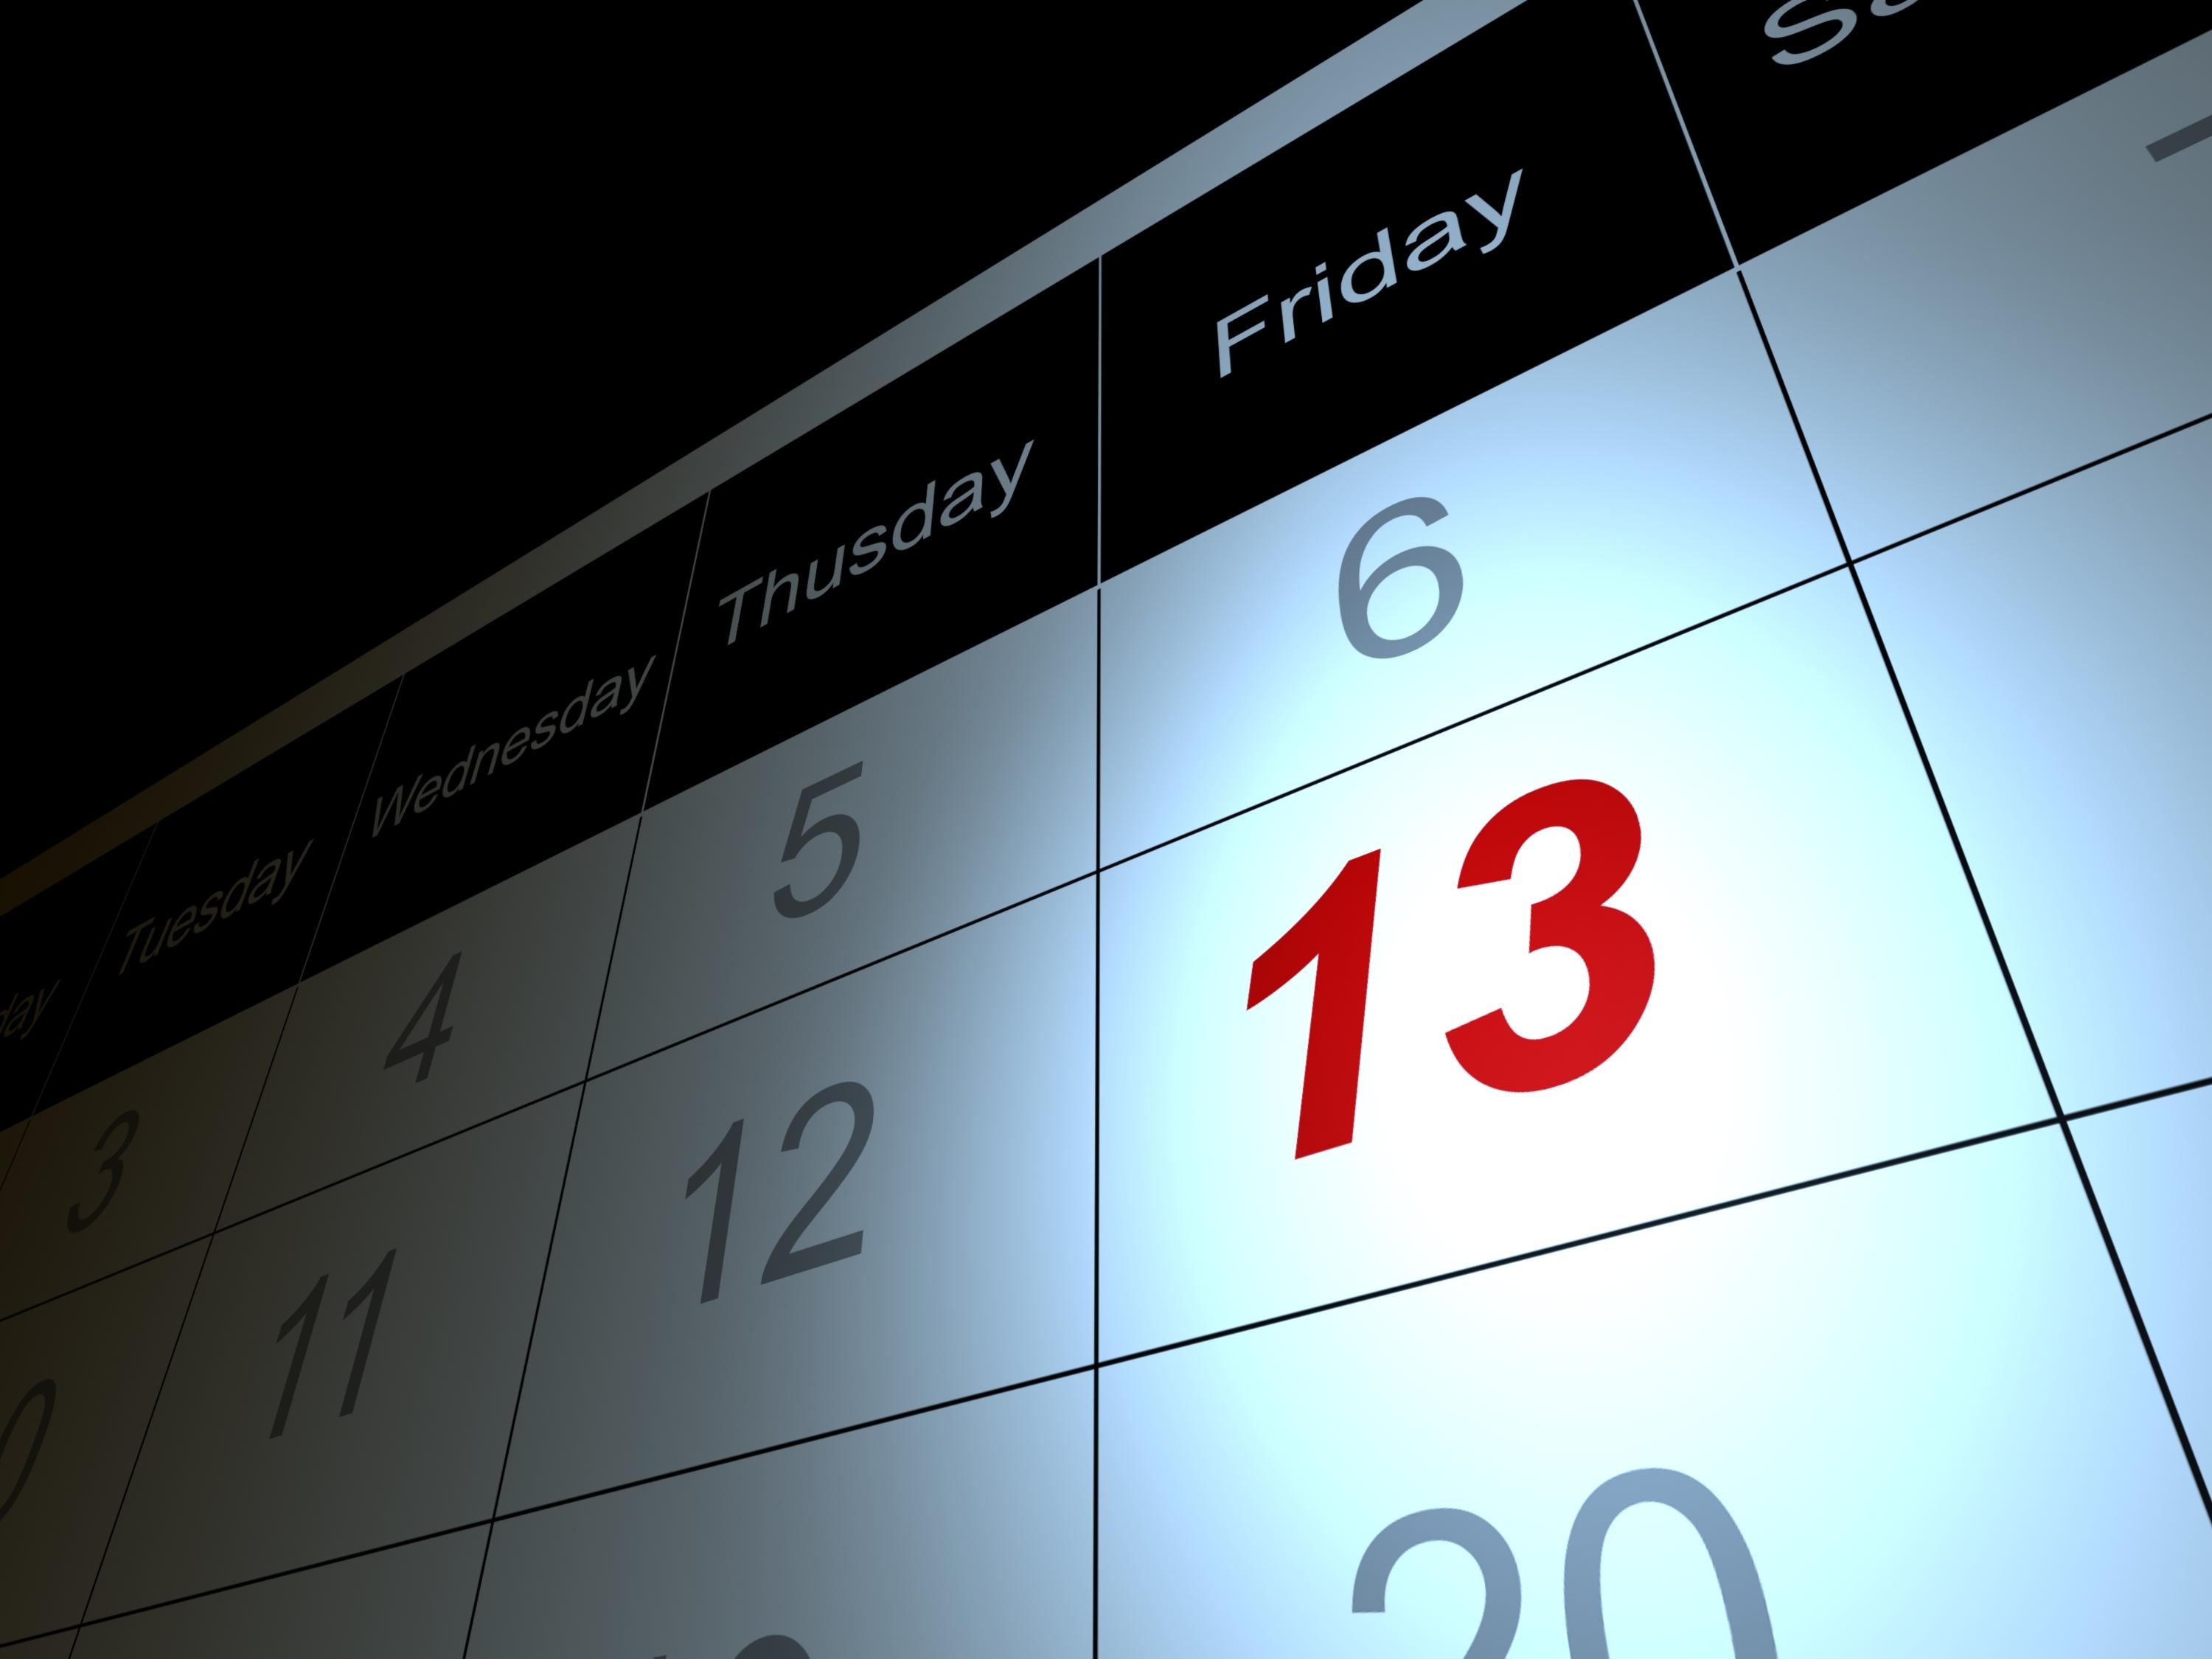 Friday the 13th highlighted on a calendar